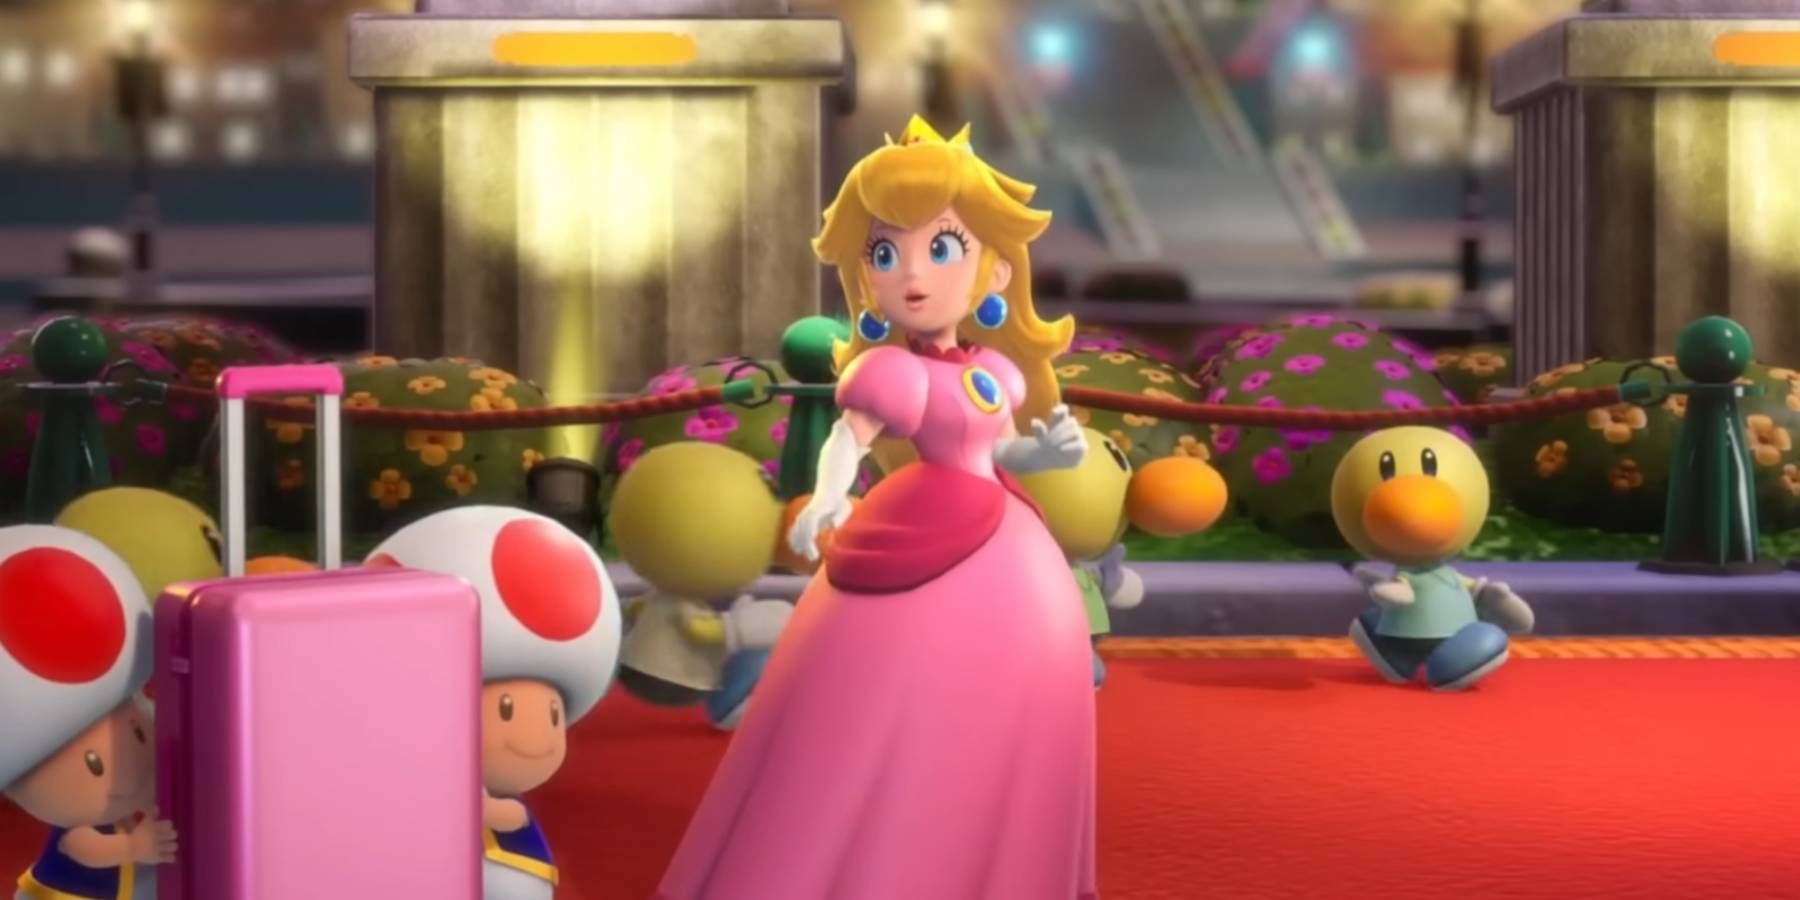 Princess Peach walking down a red carpet in Princess Peach: Showtime!